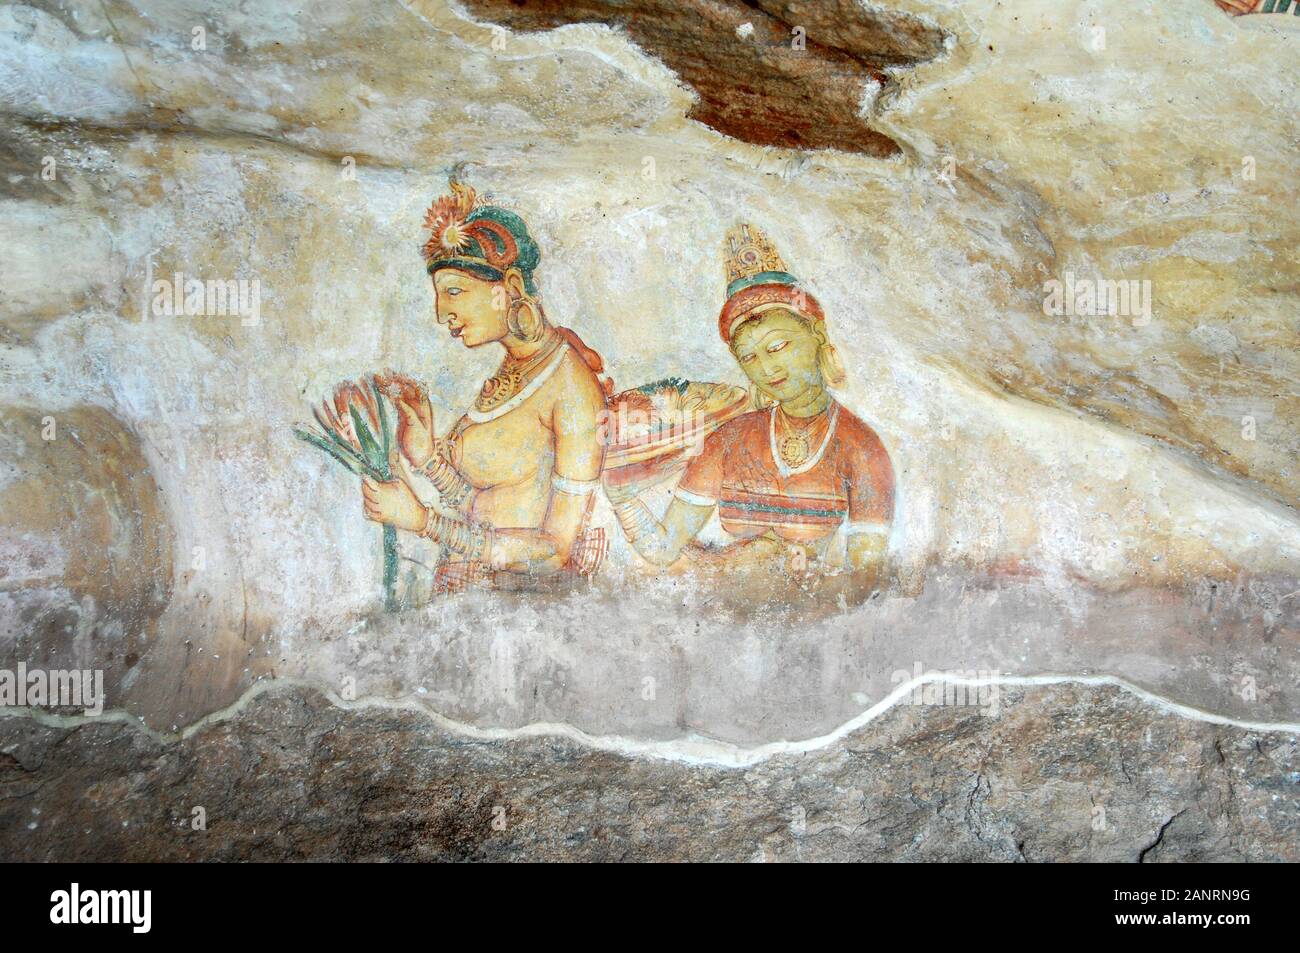 Fresques de Sigiriya sont exquis 1600 année des peintures anciennes de la belle femme du roi Kasyapas harem. Sigiriya, Sri Lanka. Banque D'Images